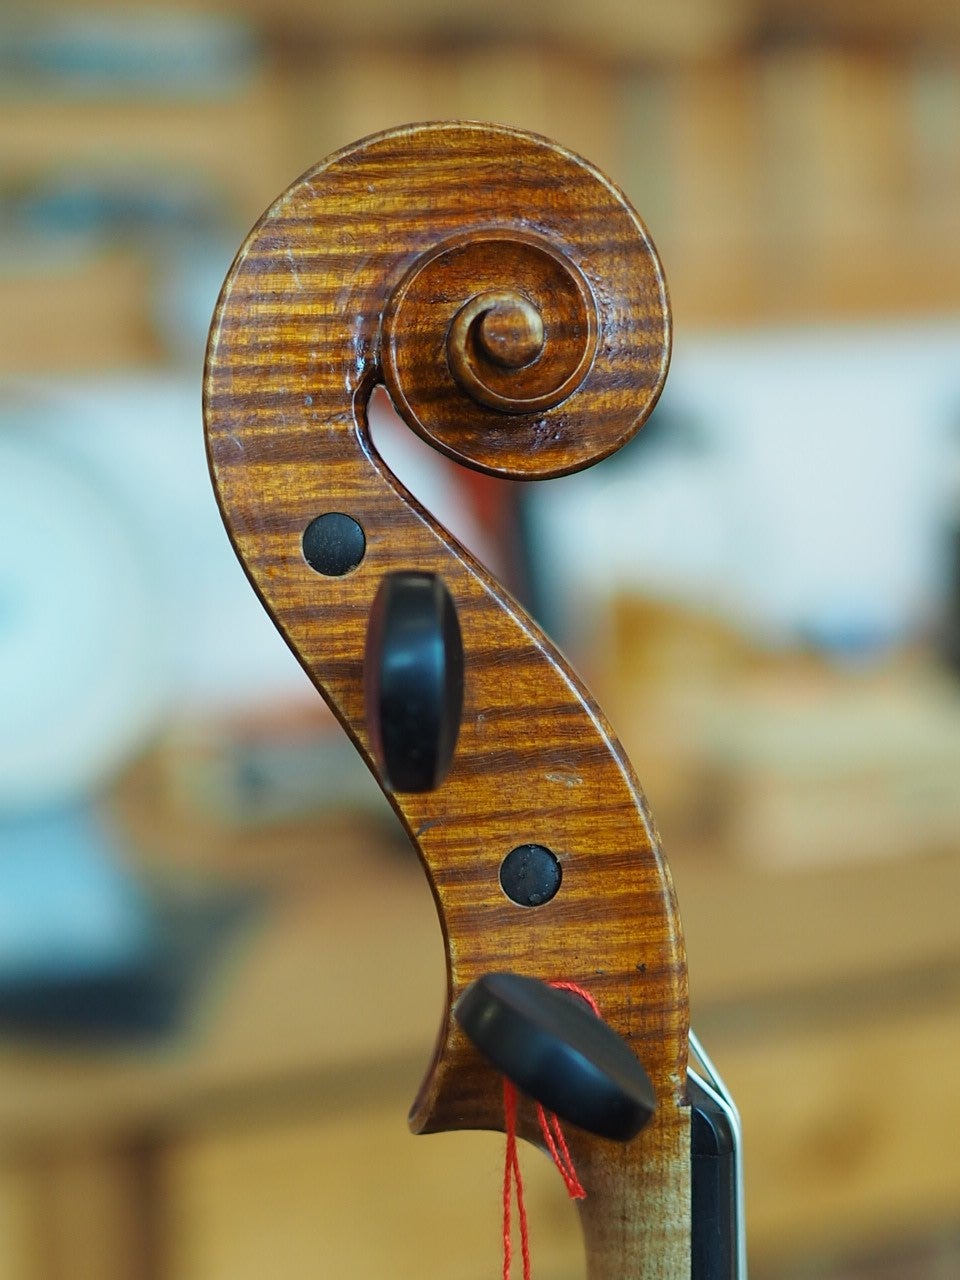 戦時中のフランスのヴァイオリン | ヴァイオリン技術者の弦楽器研究ノート